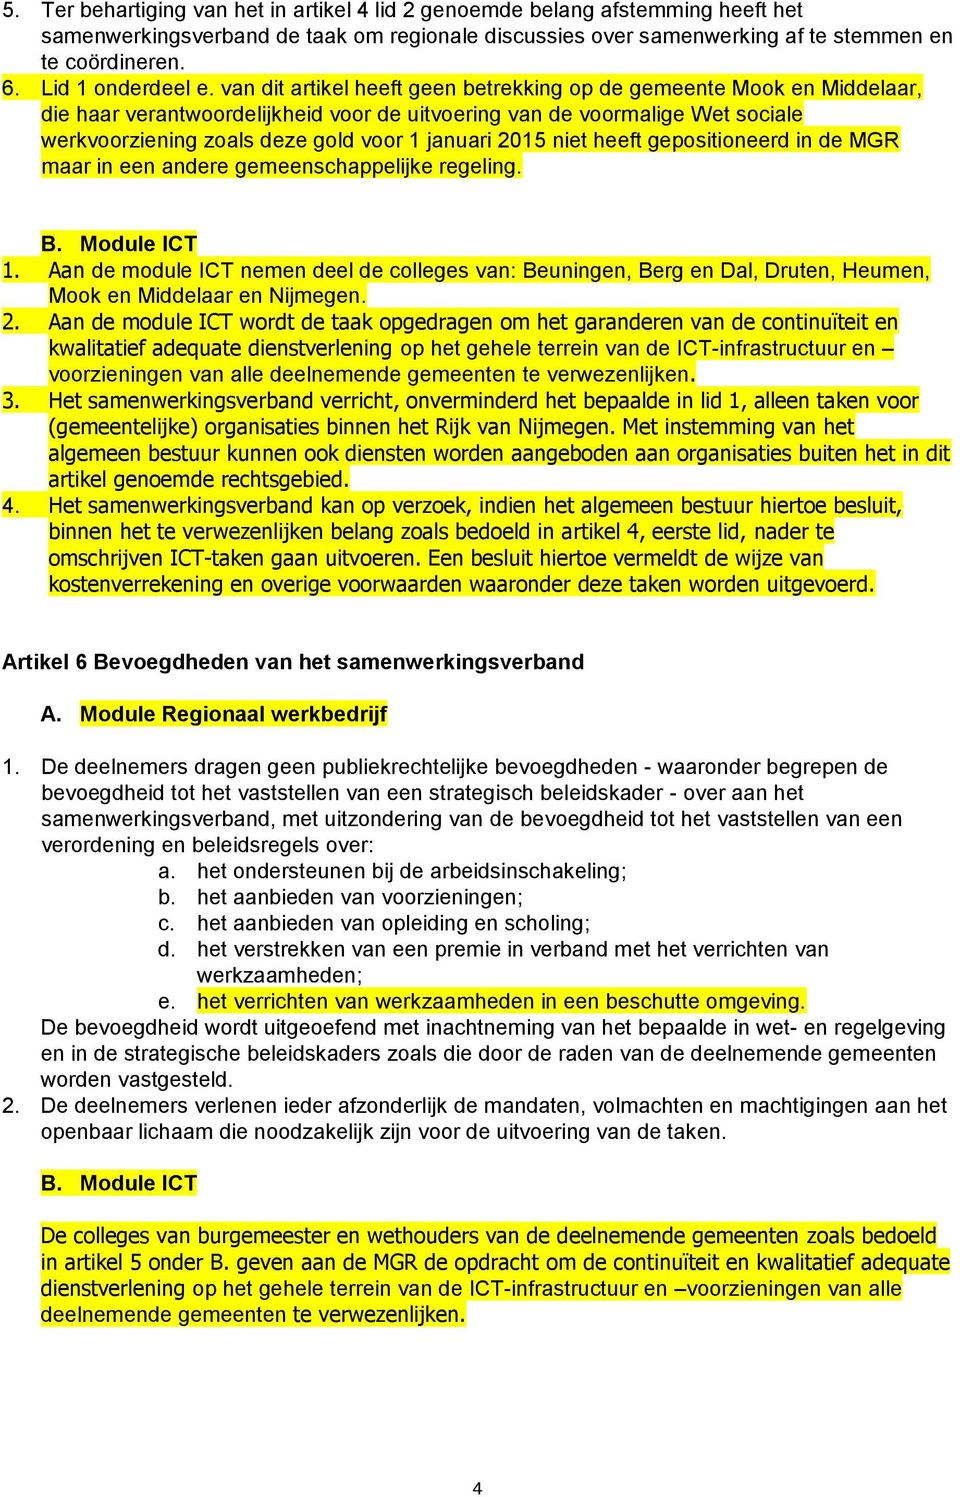 van dit artikel heeft geen betrekking de gemeente Mook en Middelaar, die haar verantwoordelijkheid voor de uitvoering van de voormalige Wet sociale werkvoorziening zoals deze gold voor 1 januari 2015